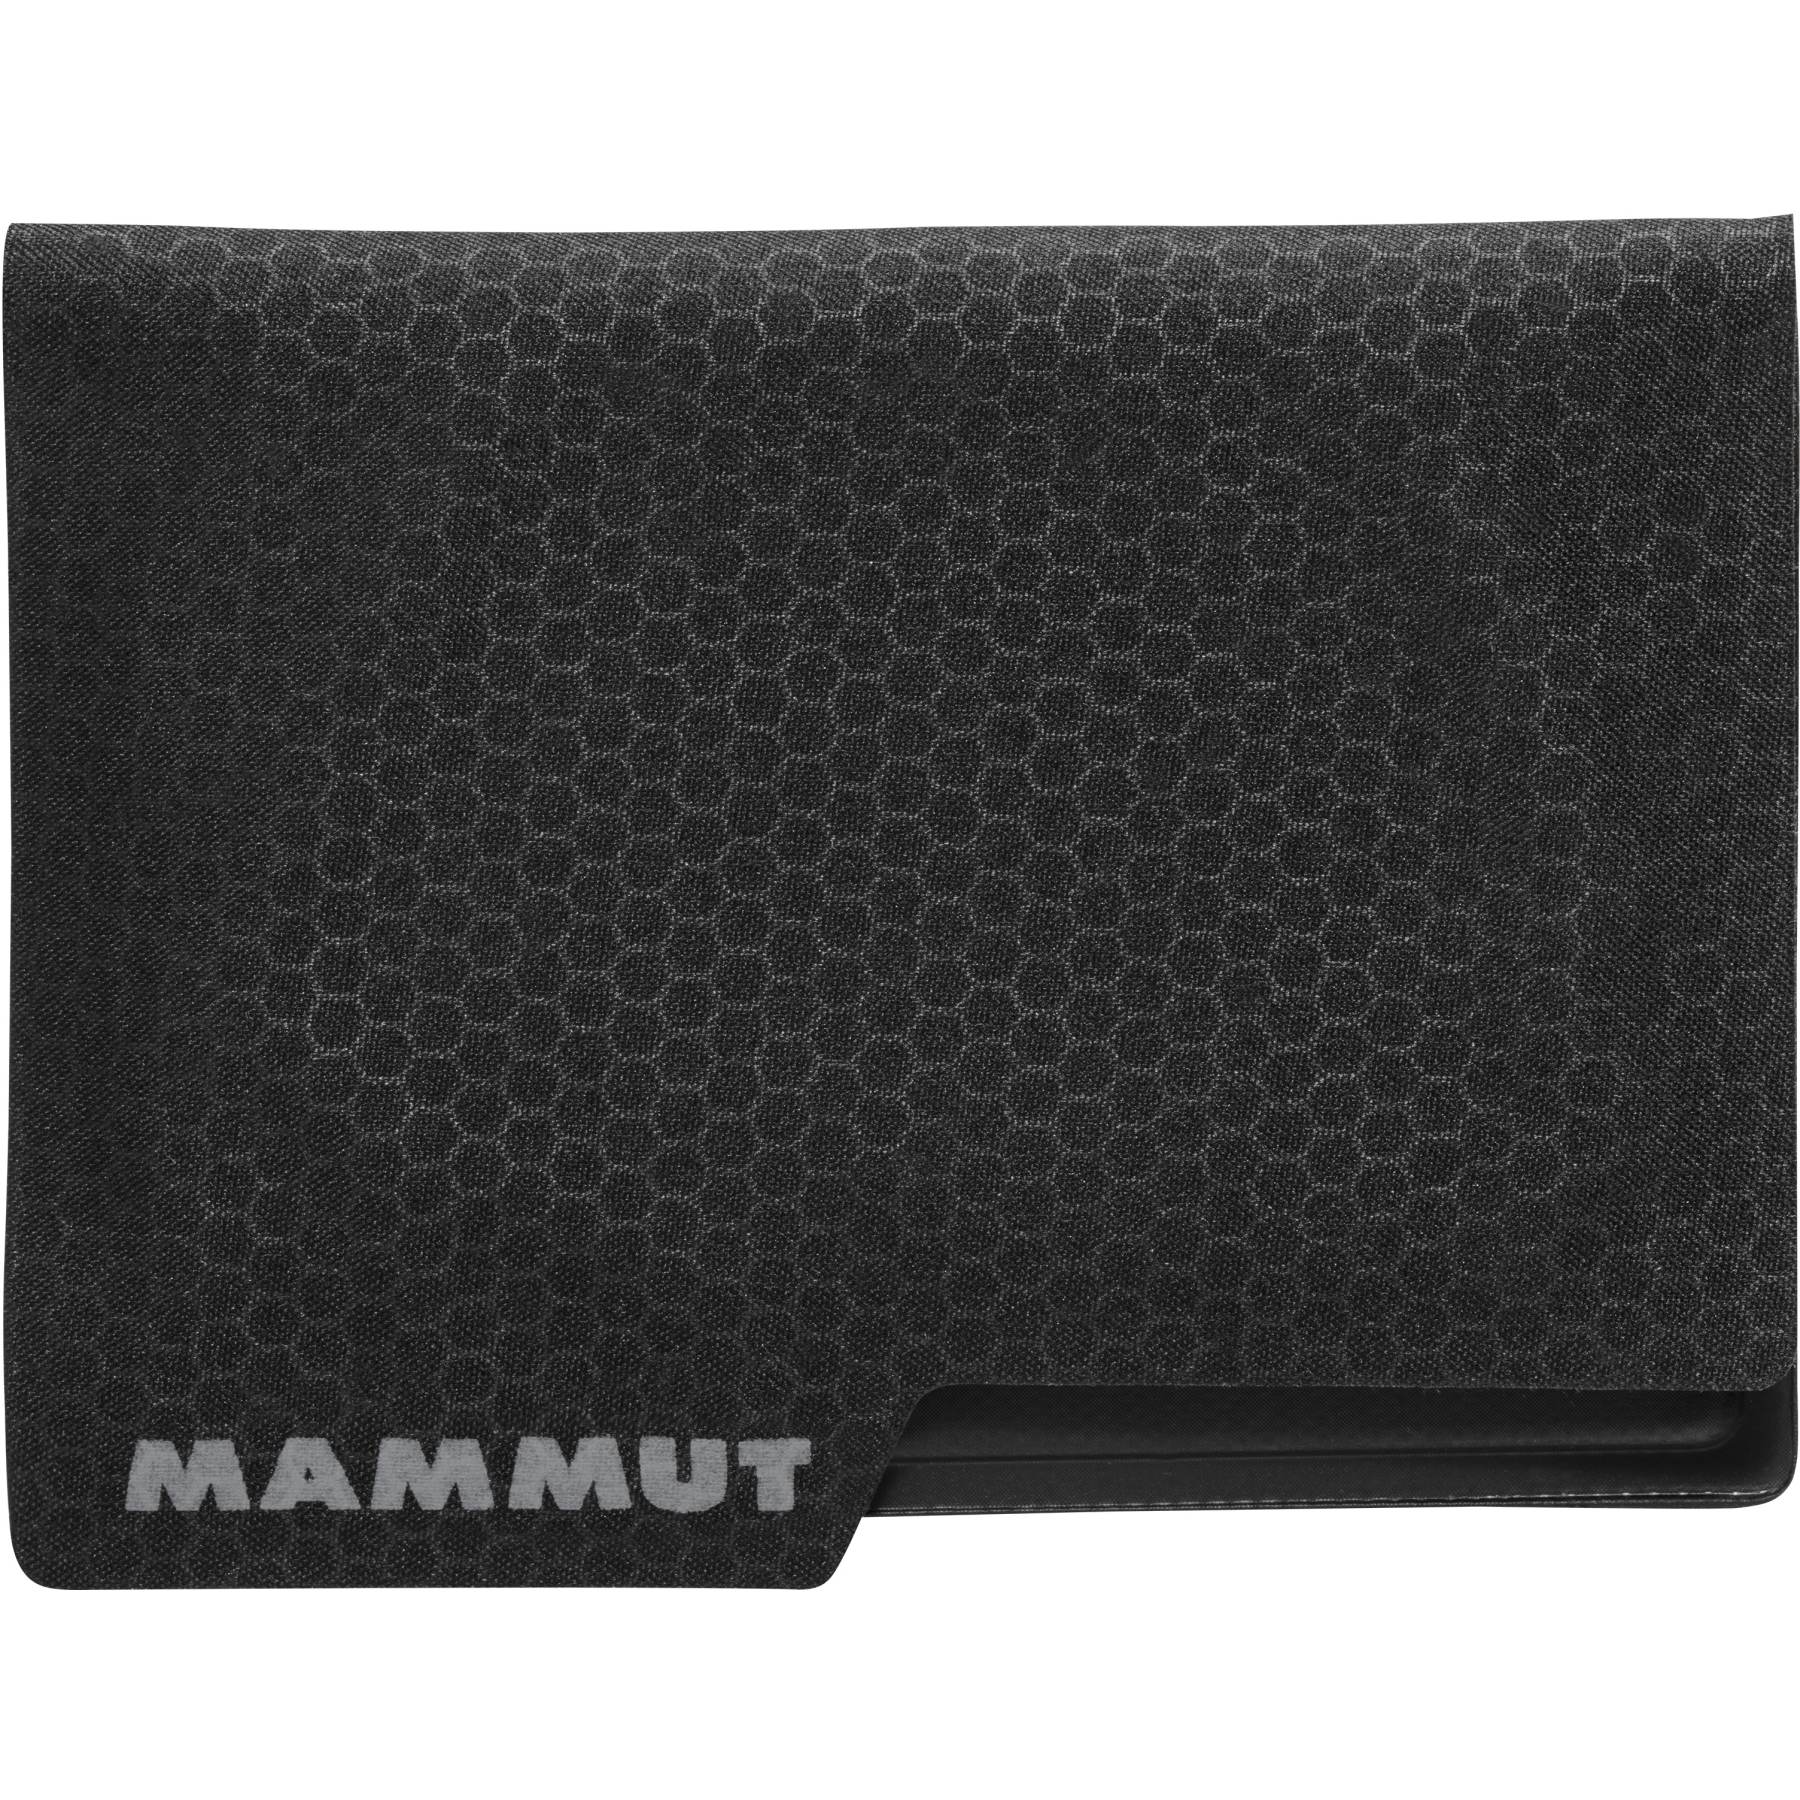 Produktbild von Mammut Smart Ultralight Geldbeutel - schwarz